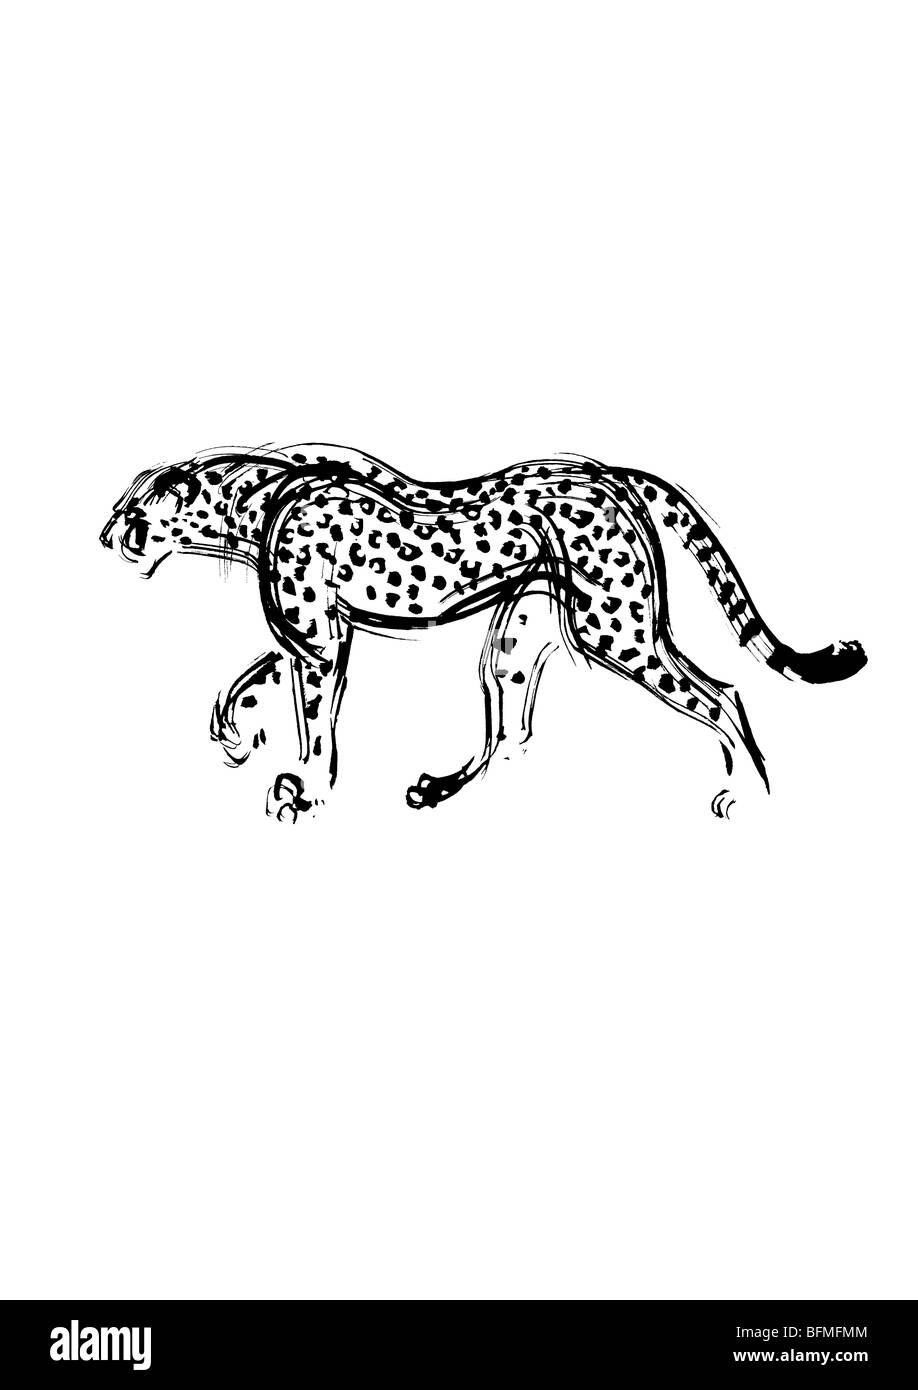 Leopardo nero immagini e fotografie stock ad alta risoluzione - Alamy